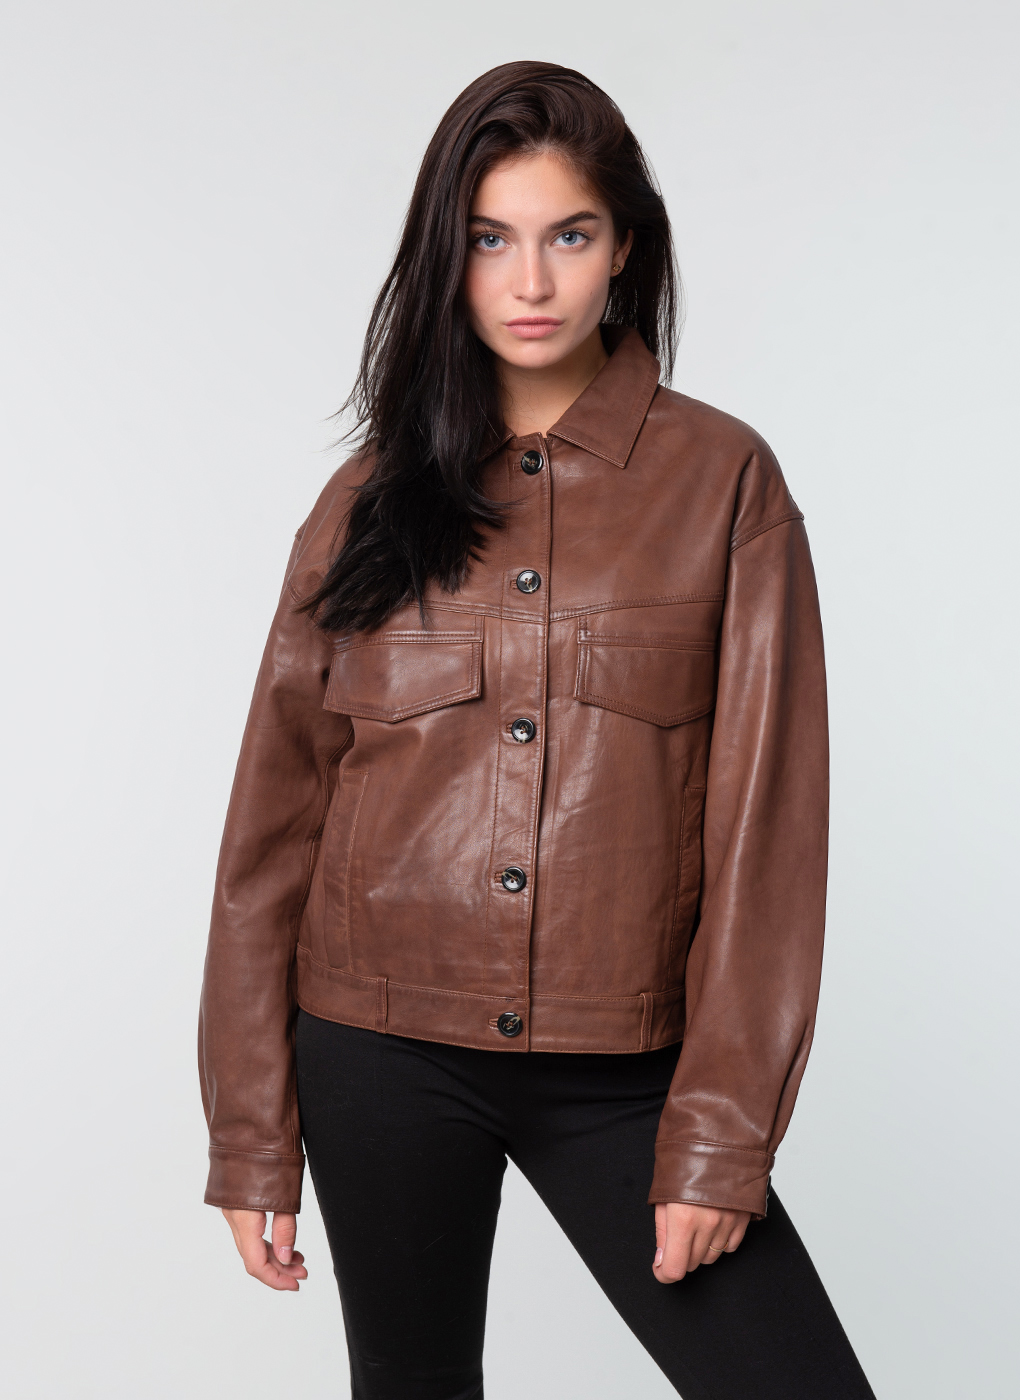 Кожаная куртка женская Каляев 62400 коричневая 54 RU